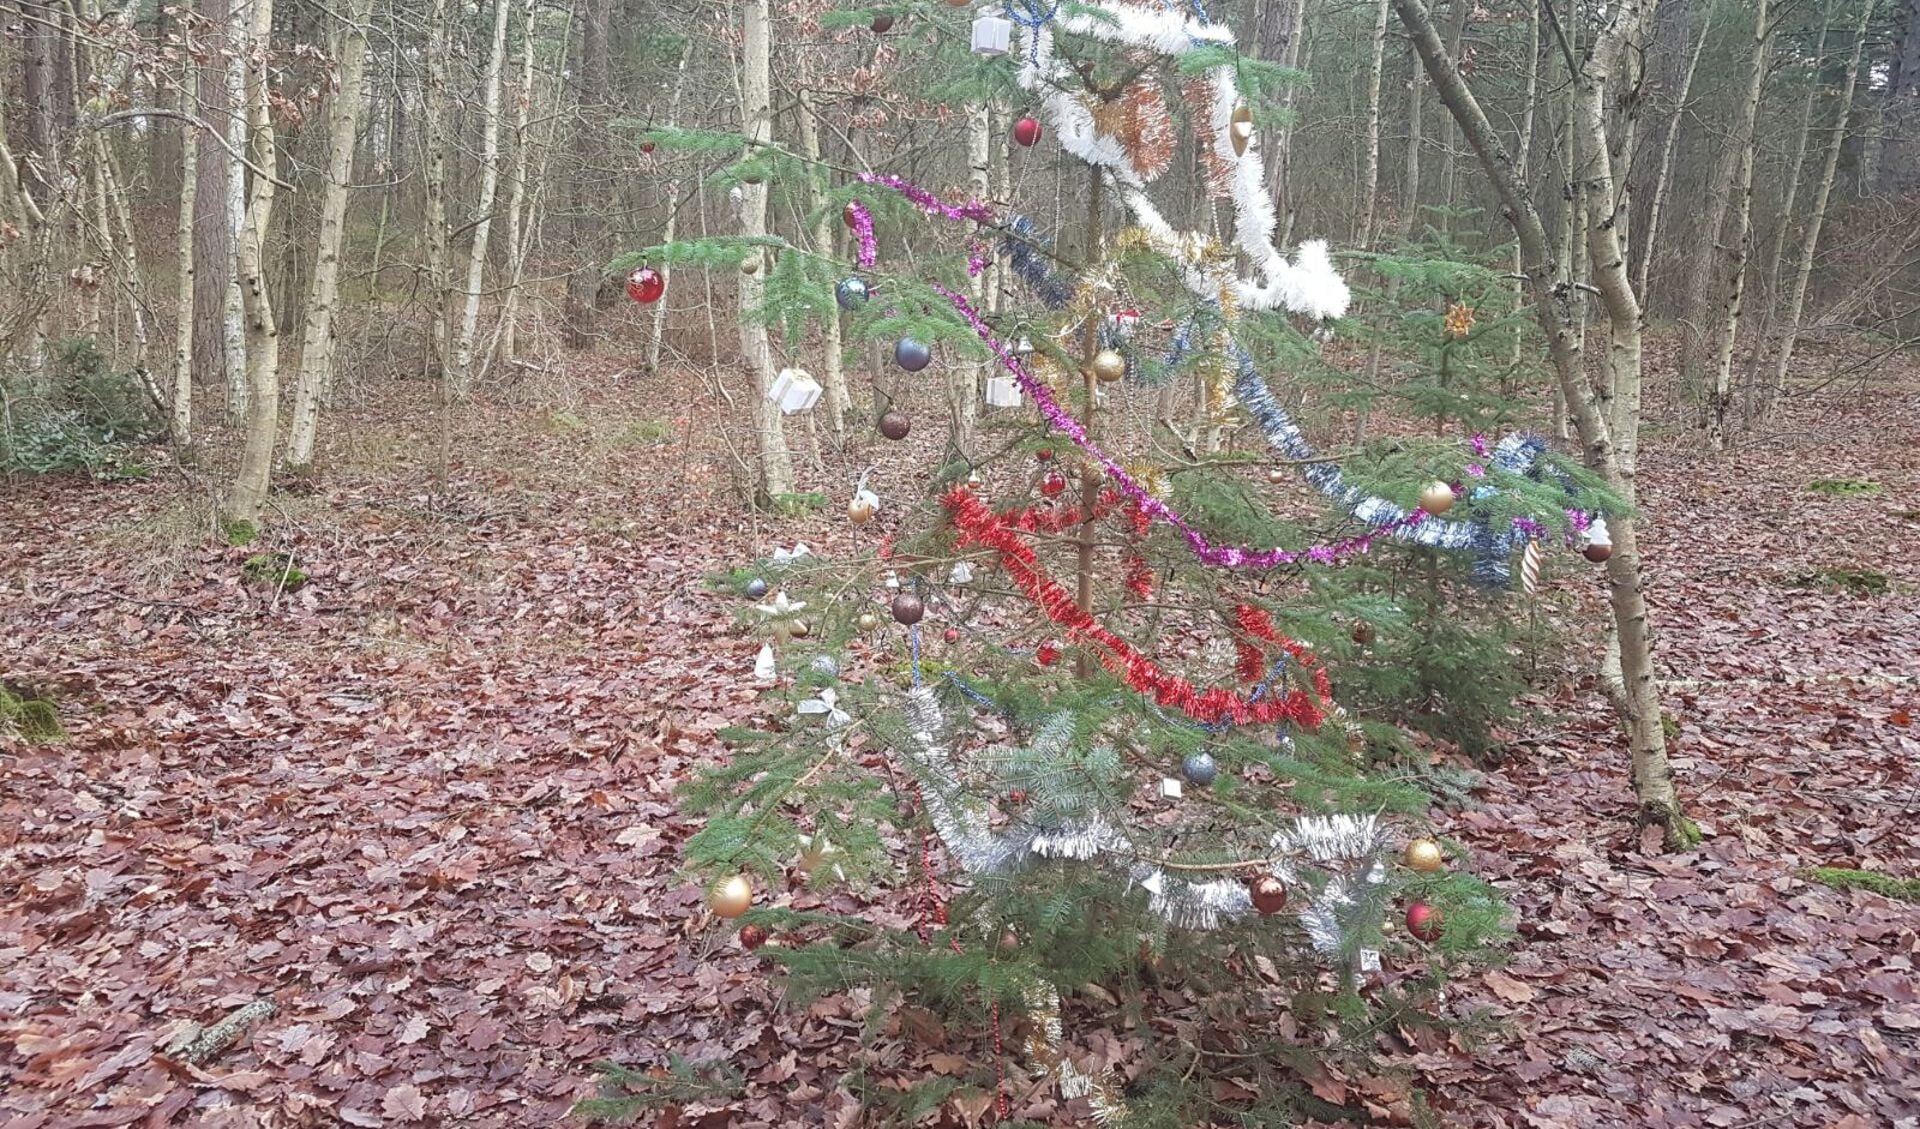 De kerstboom in het bos.